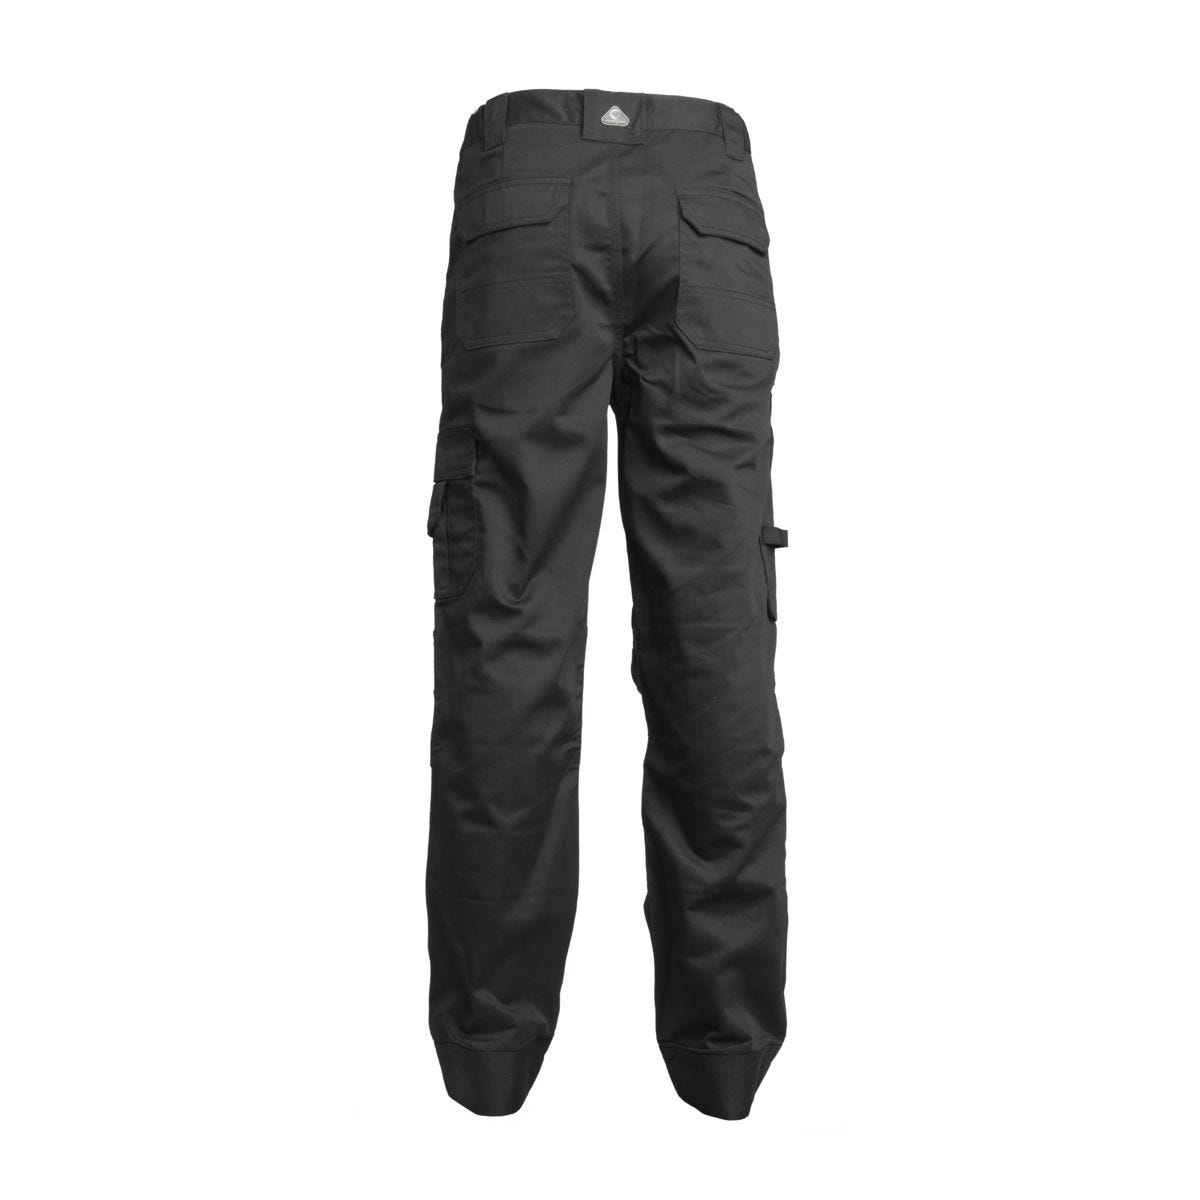 Pantalon CLASS noir - COVERGUARD - Taille M 1